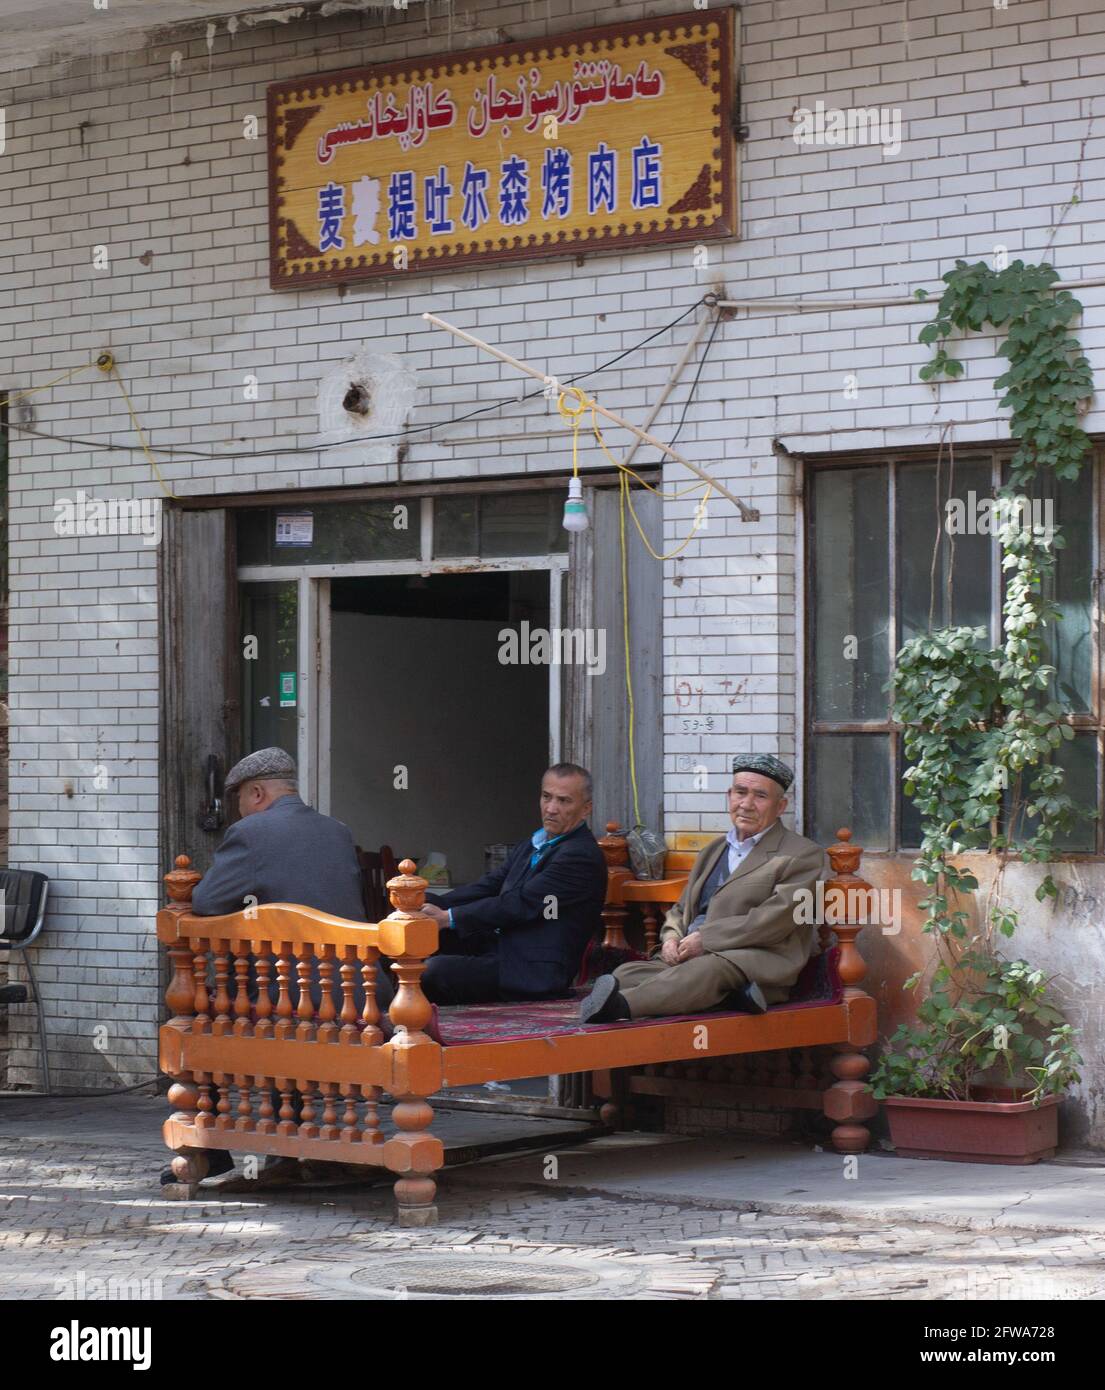 Tre uomini adulti seduti su un letto fuori dalla tenda Kashgar, Xinkiang, Repubblica popolare Cinese, 2019 Foto Stock